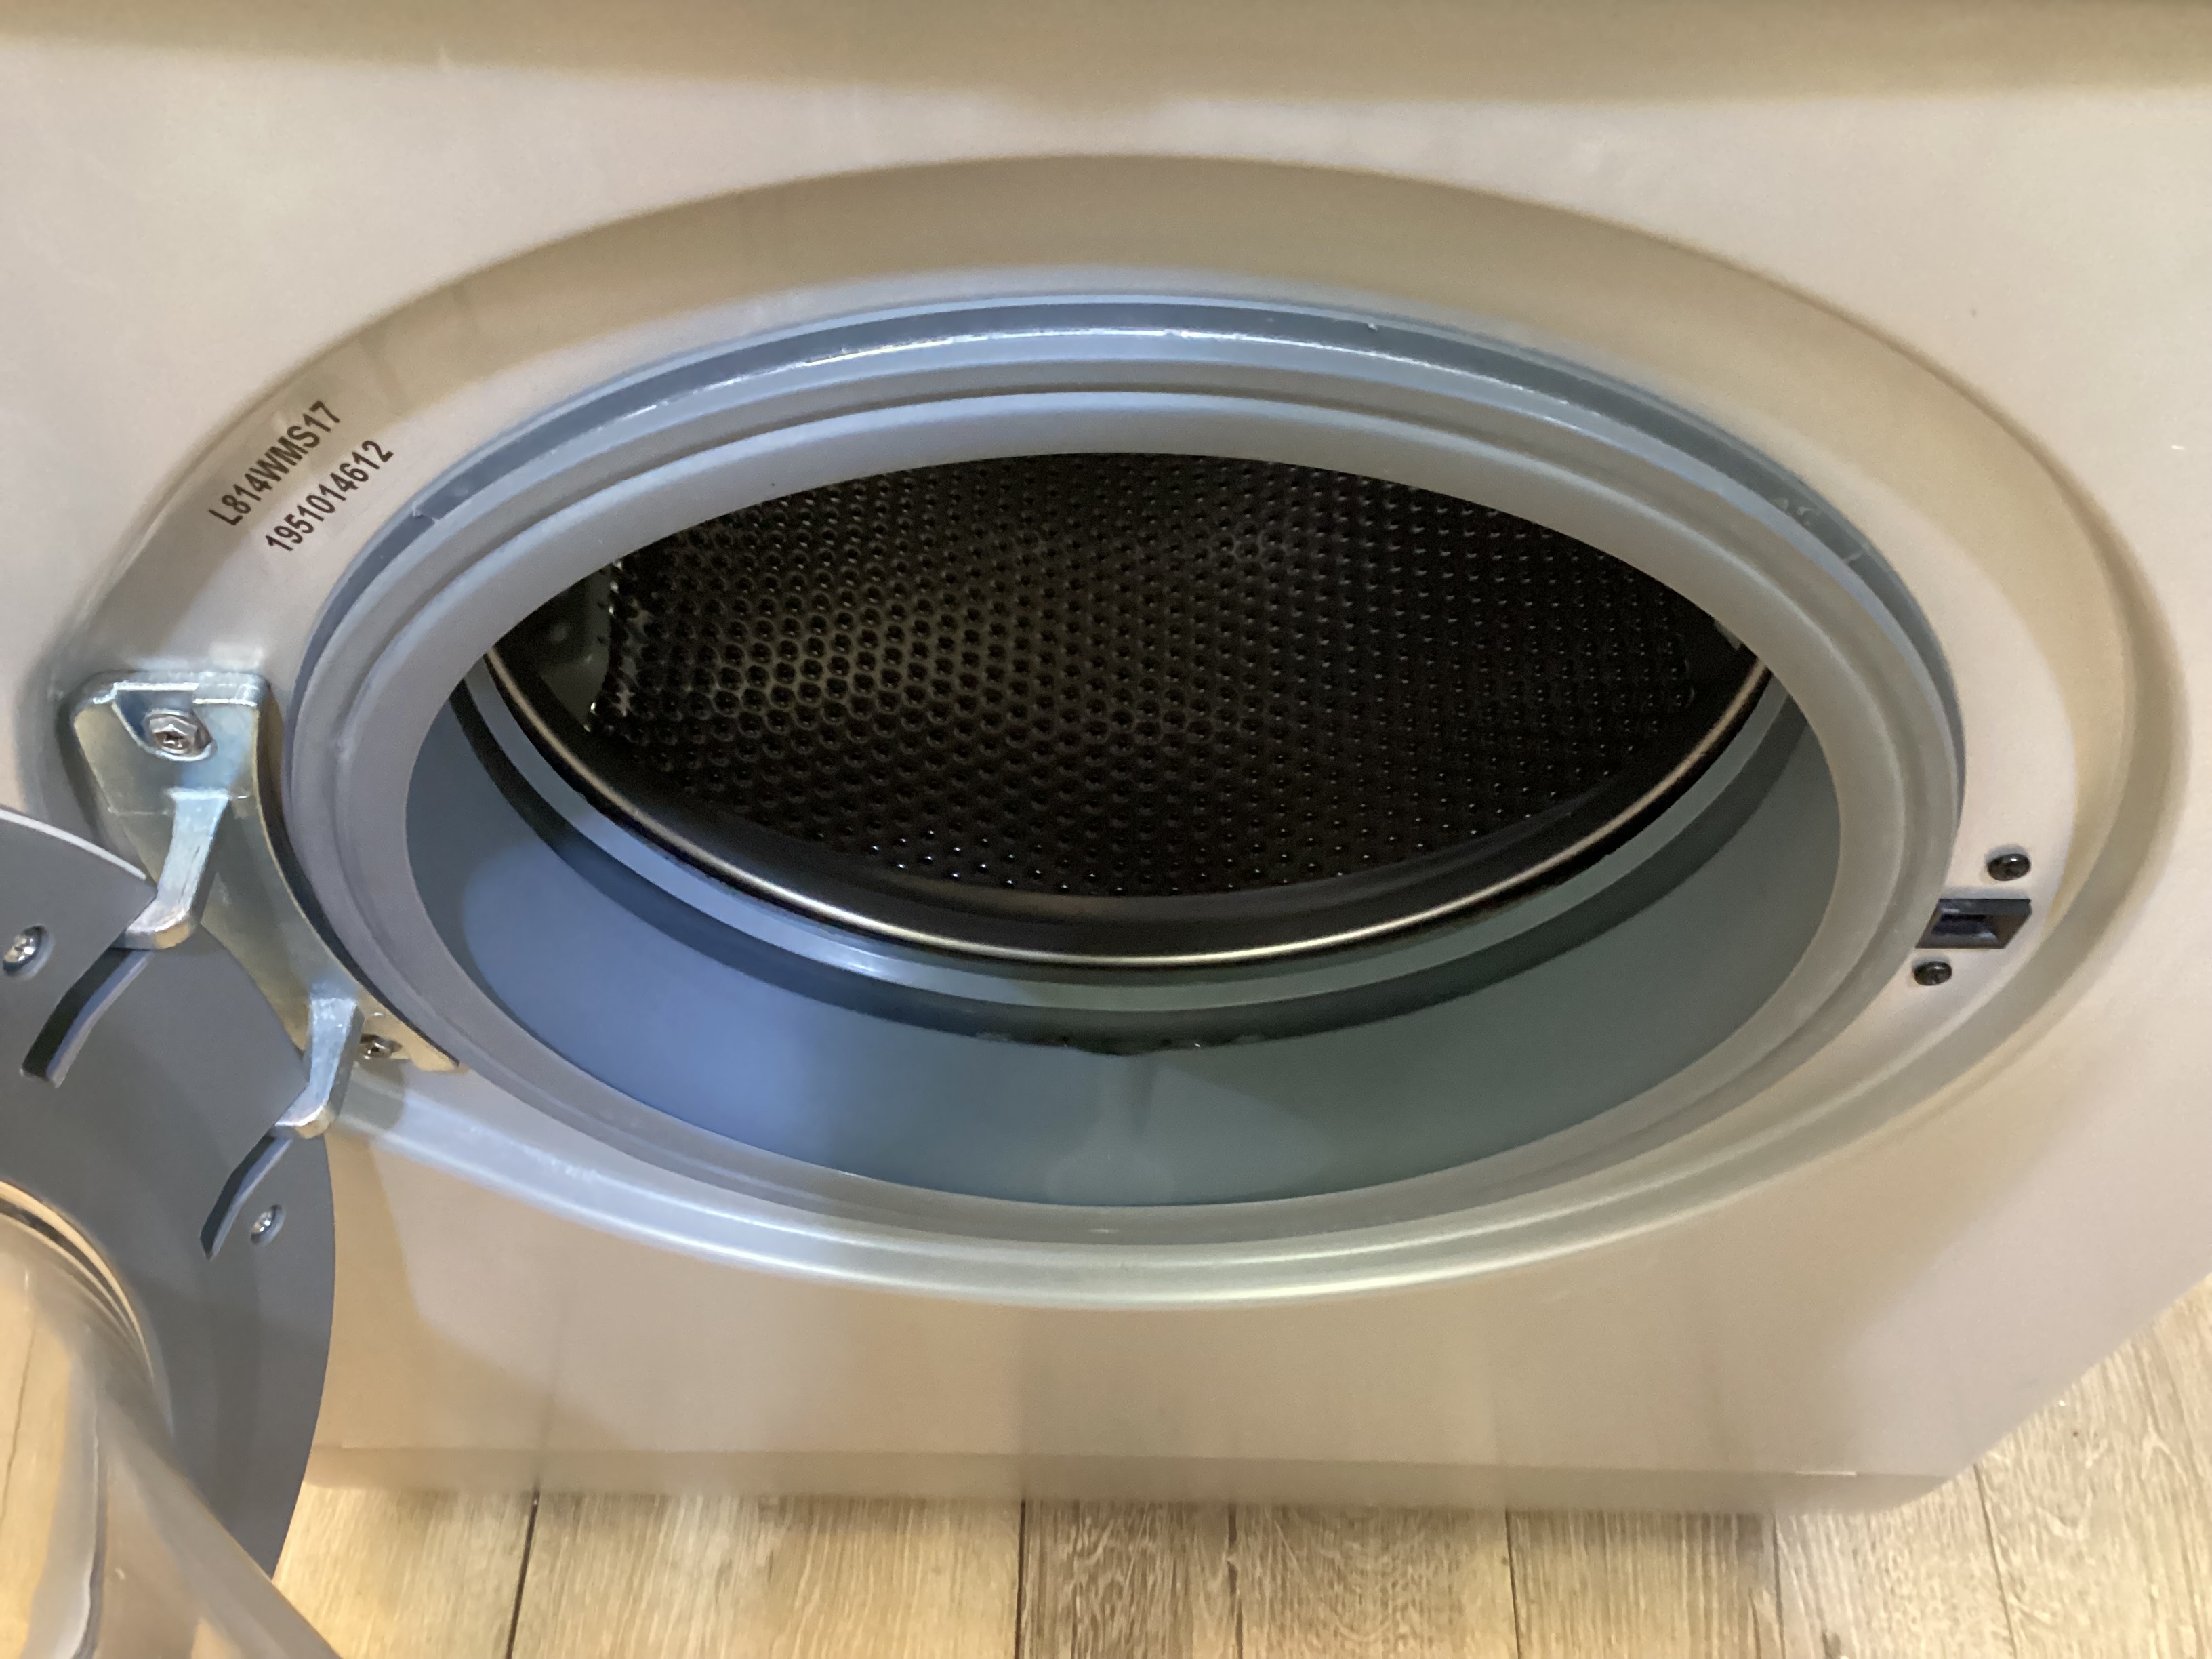 Logik 8kg Washing machine